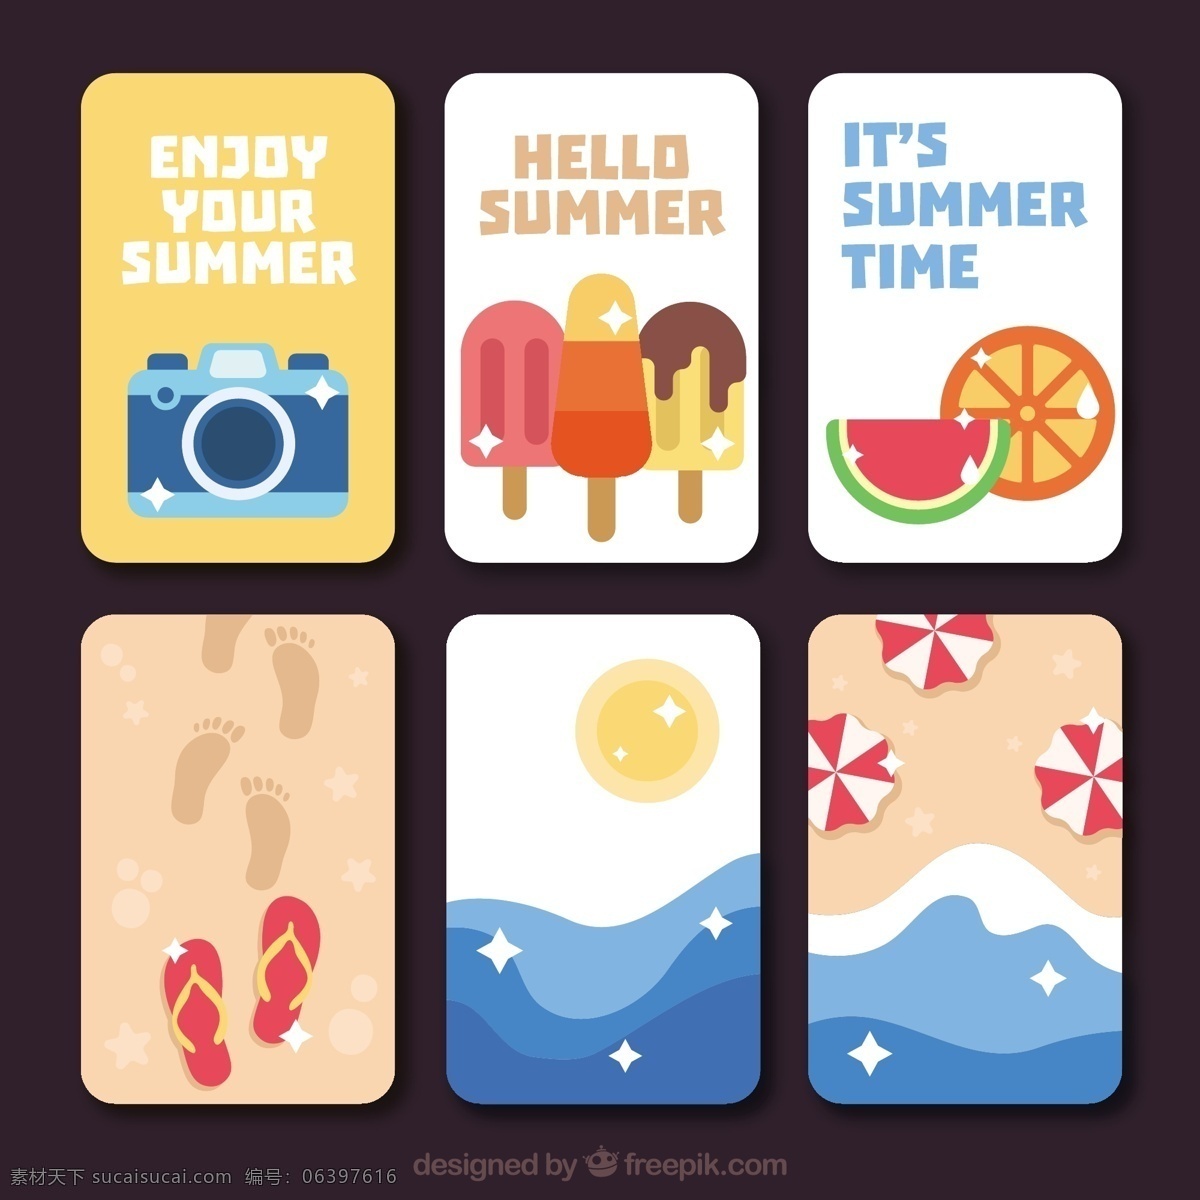 平夏牌品种 卡 夏季 模板 相机 海 海滩 阳光 水果 冰淇淋 色彩 度假 平板 冰 平面设计 贺卡 装饰 奶油 夏季海滩